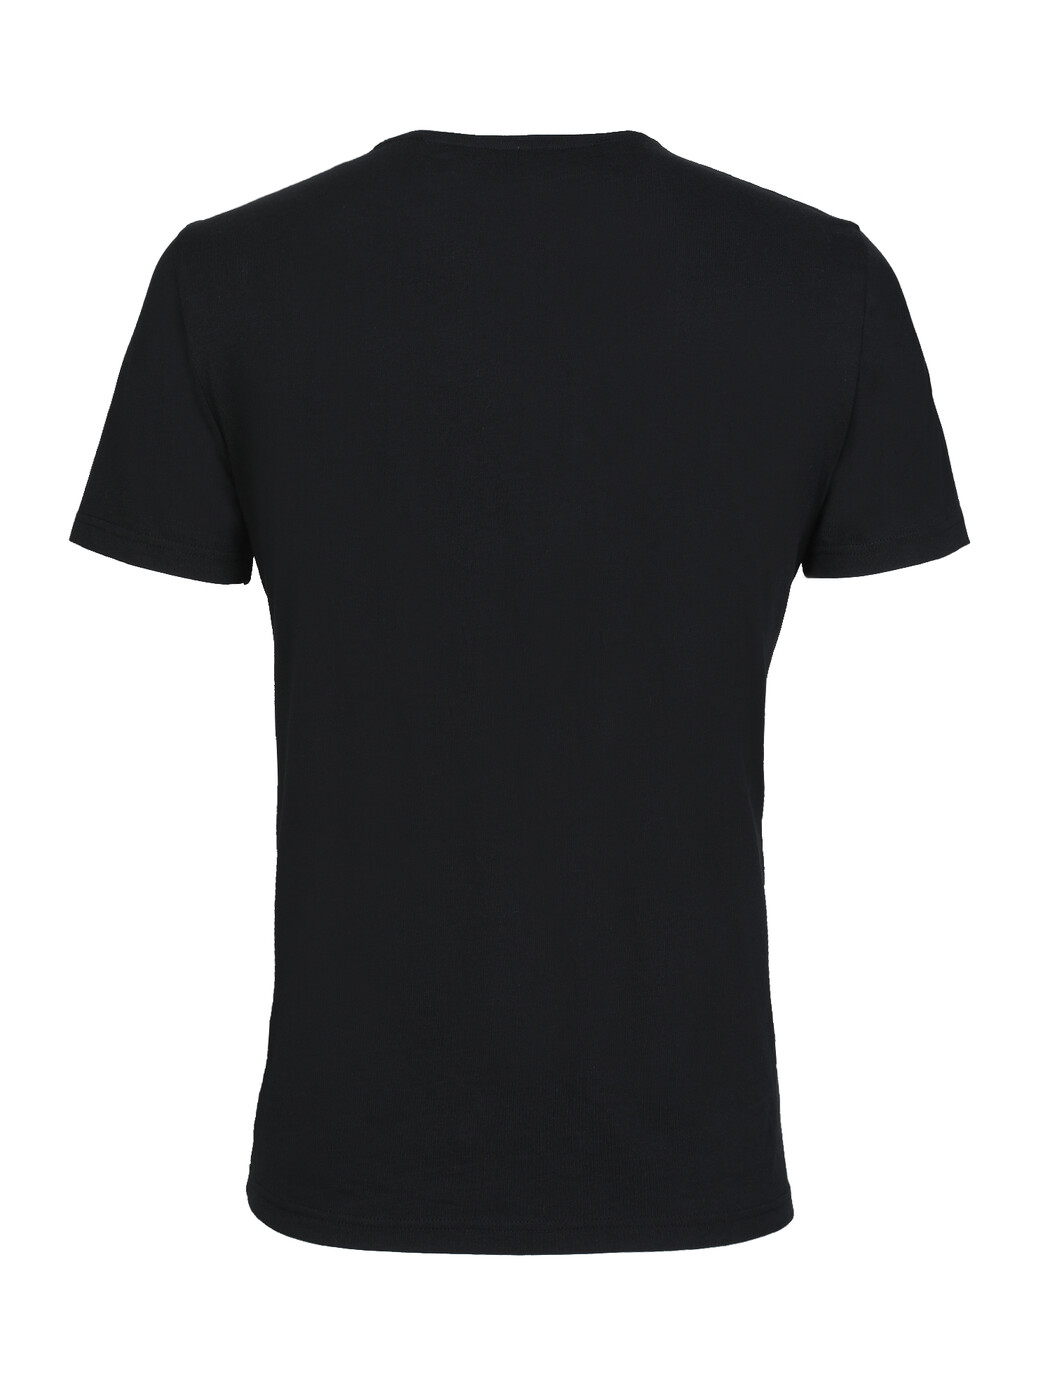 Siyah Baskılı %100 Pamuk T-Shirt - Thumbnail